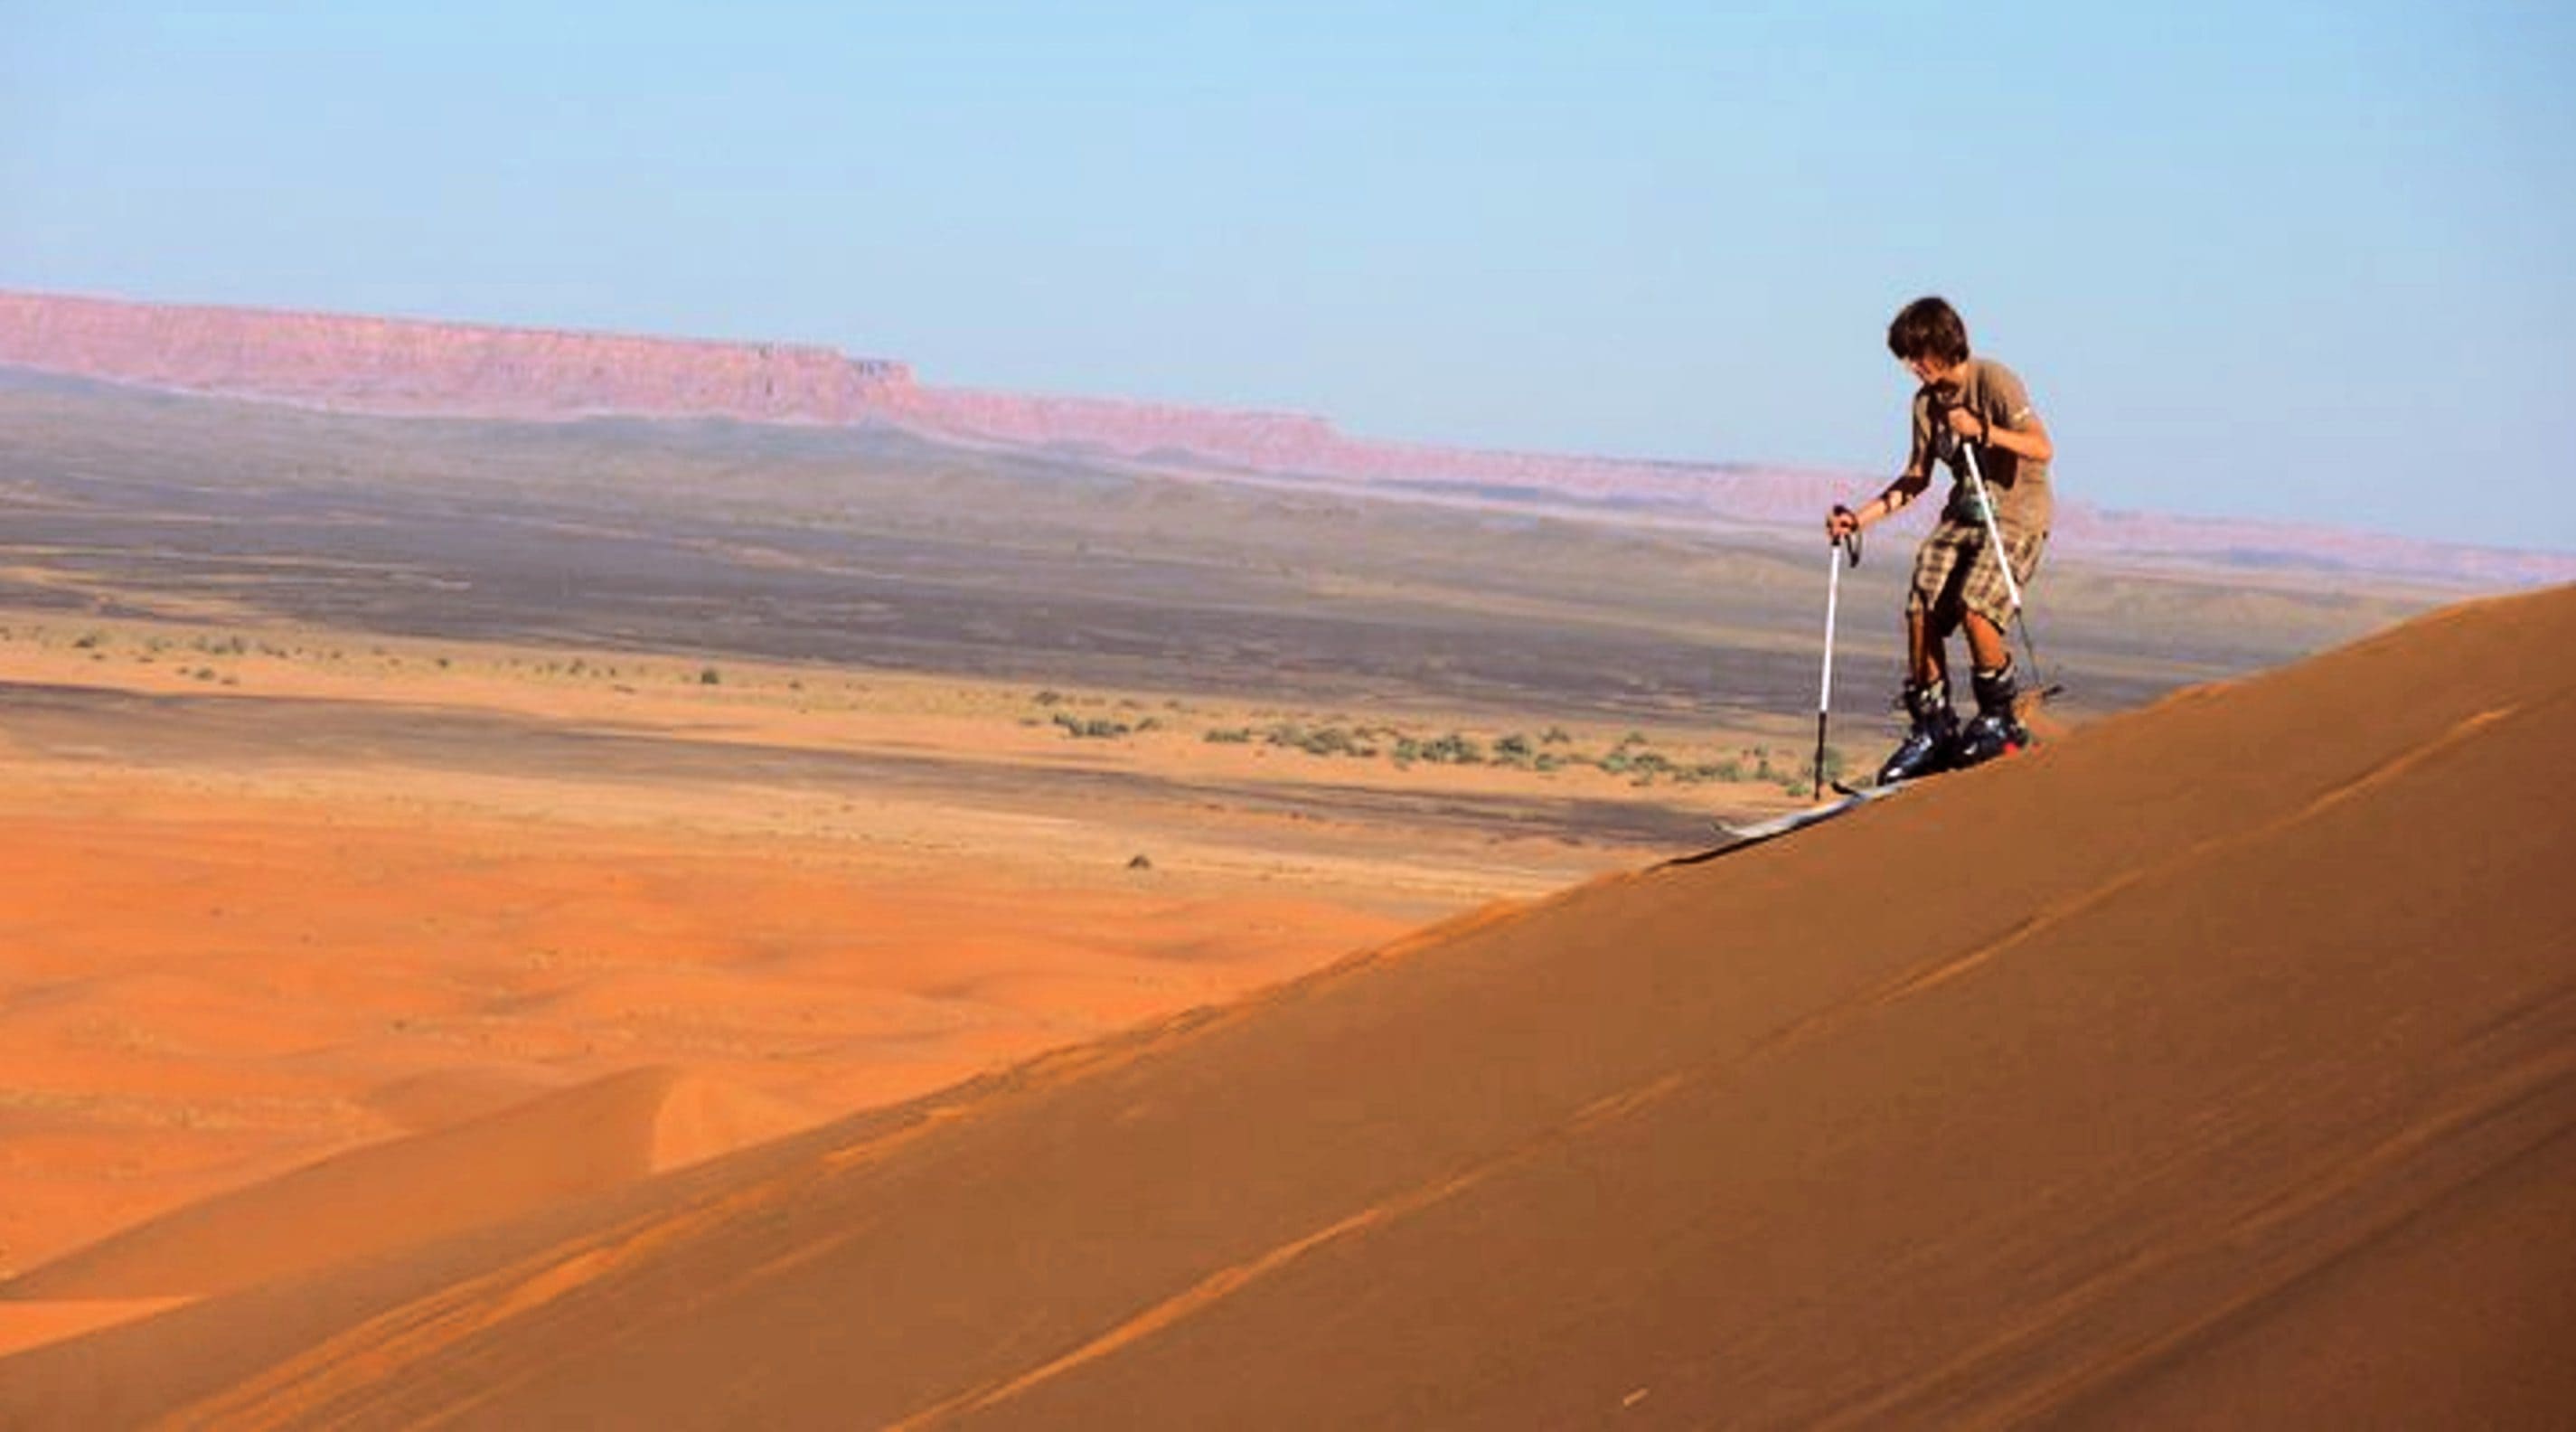 Esqui nas dunas de areia no deserto do Saara